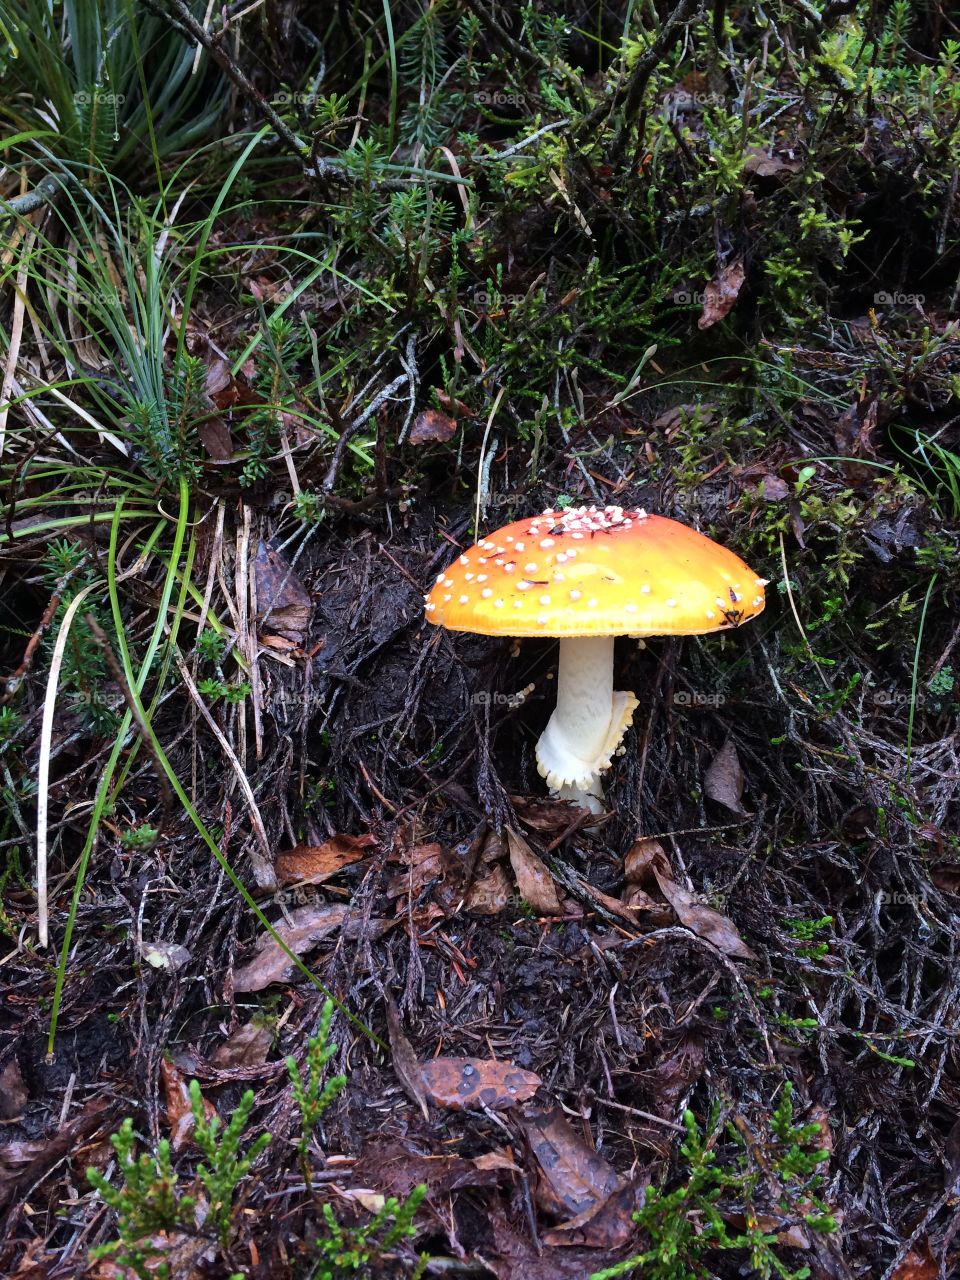 Trail mushrooms 